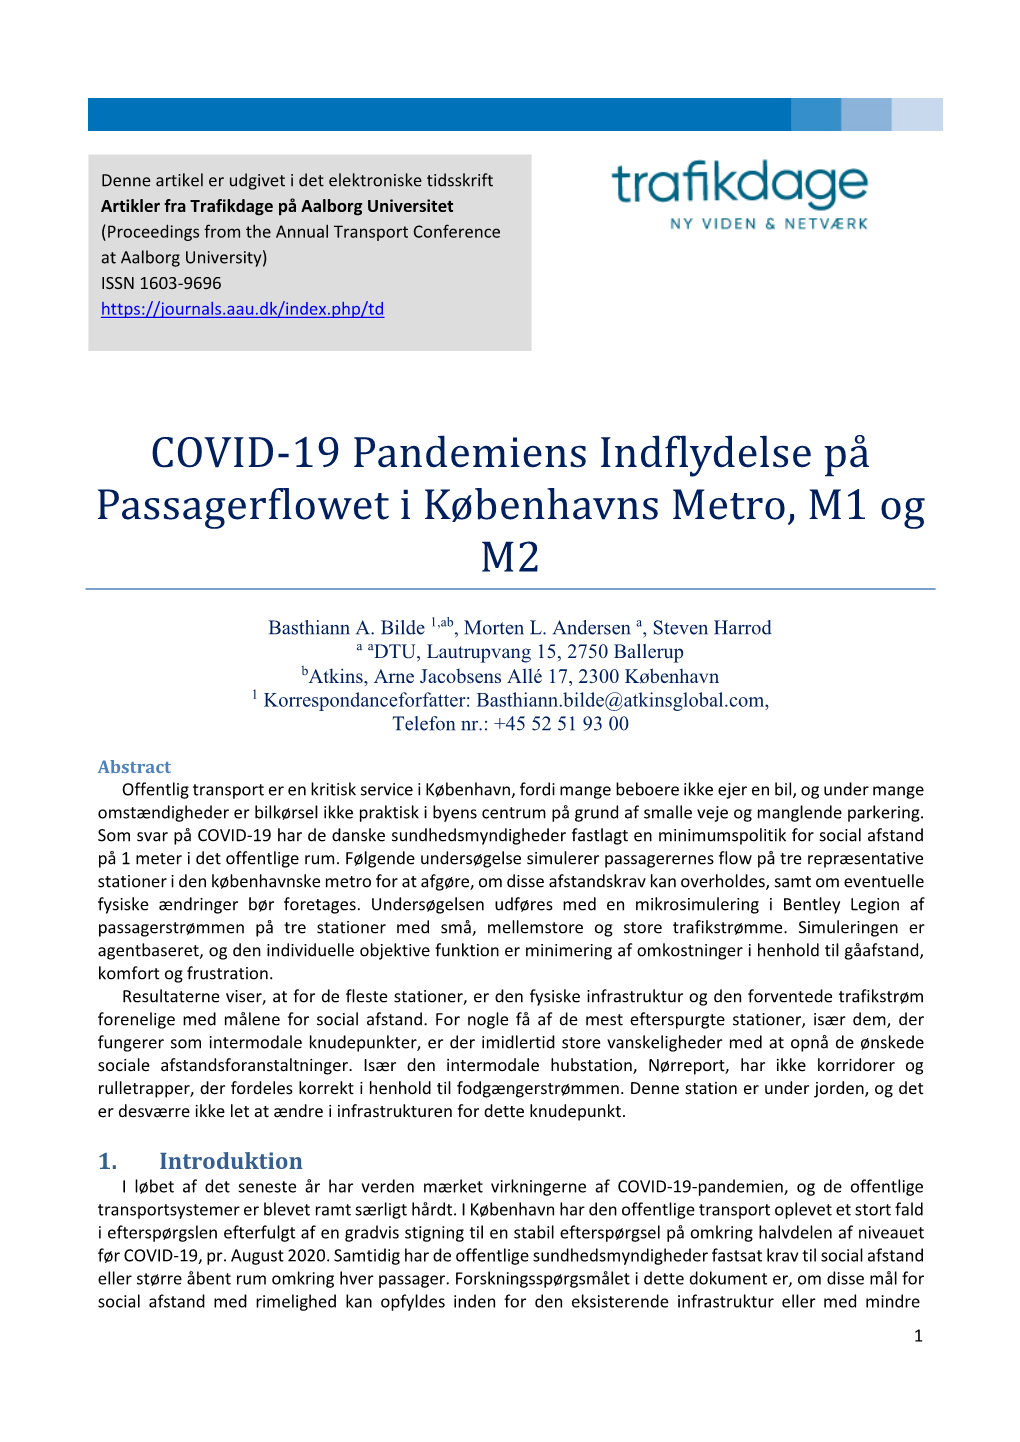 COVID-19 Pandemiens Indflydelse På Passagerflowet I